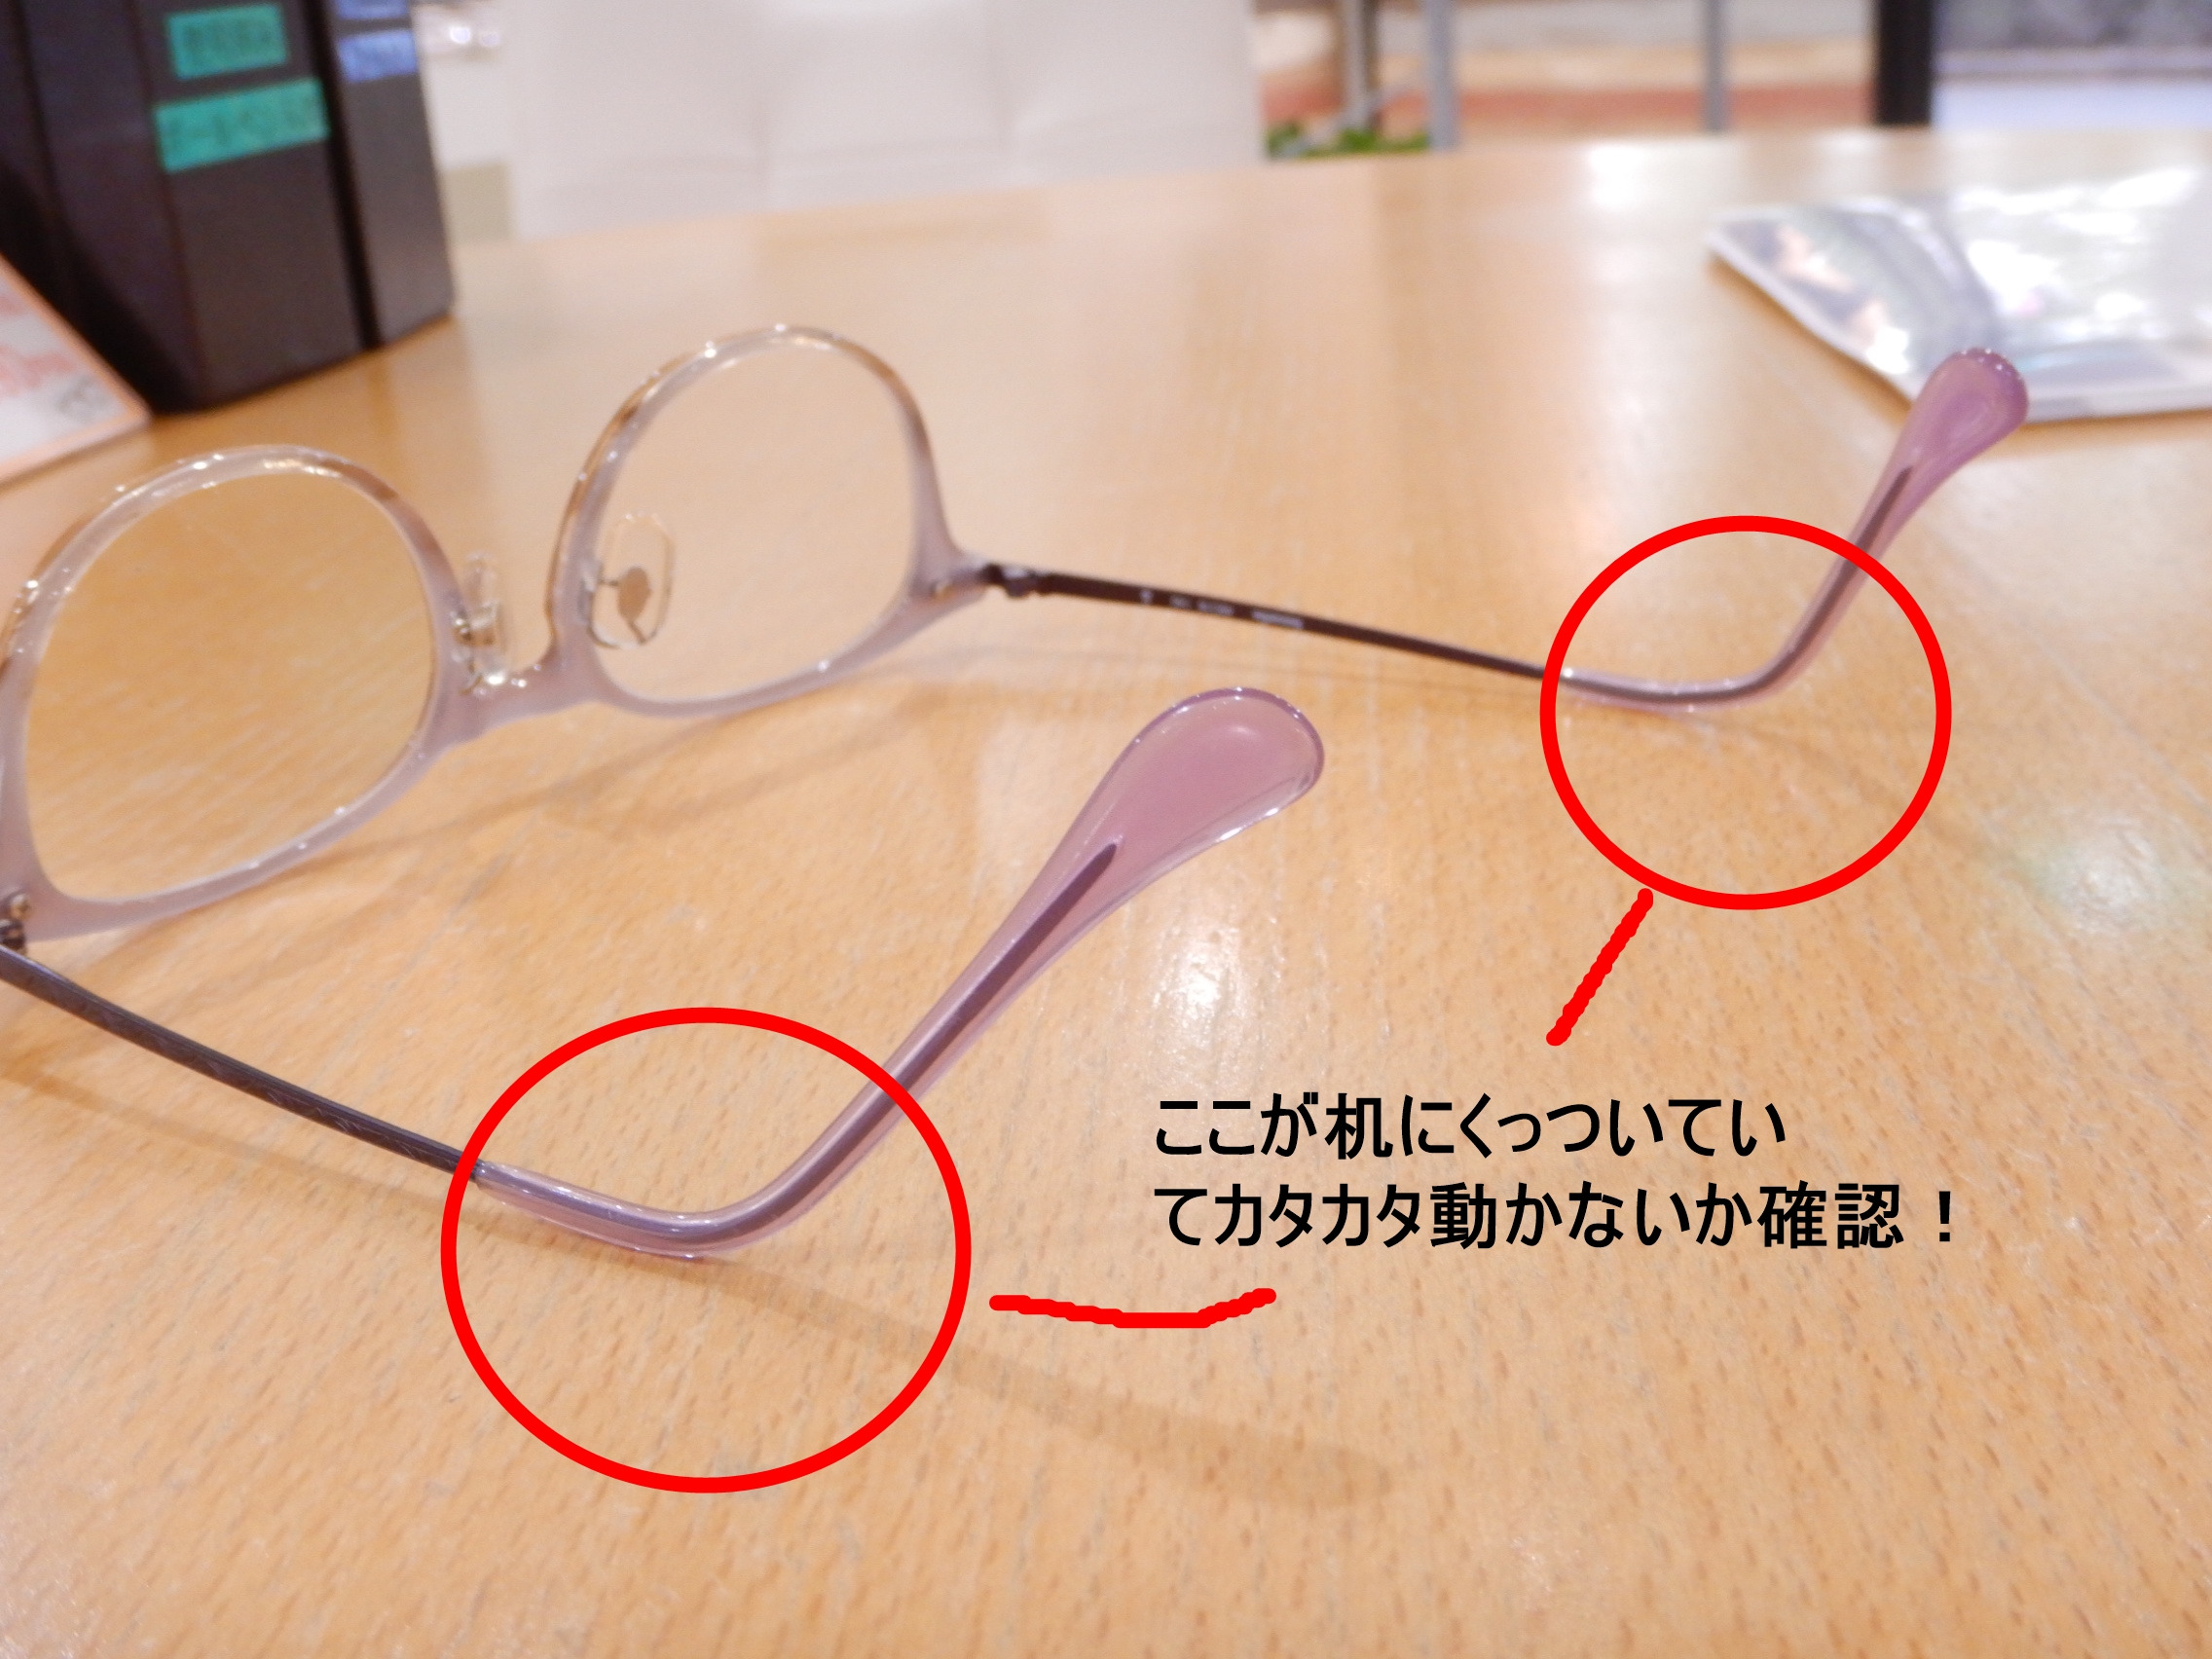 修理 メガネが曲がっているのかの判断の仕方